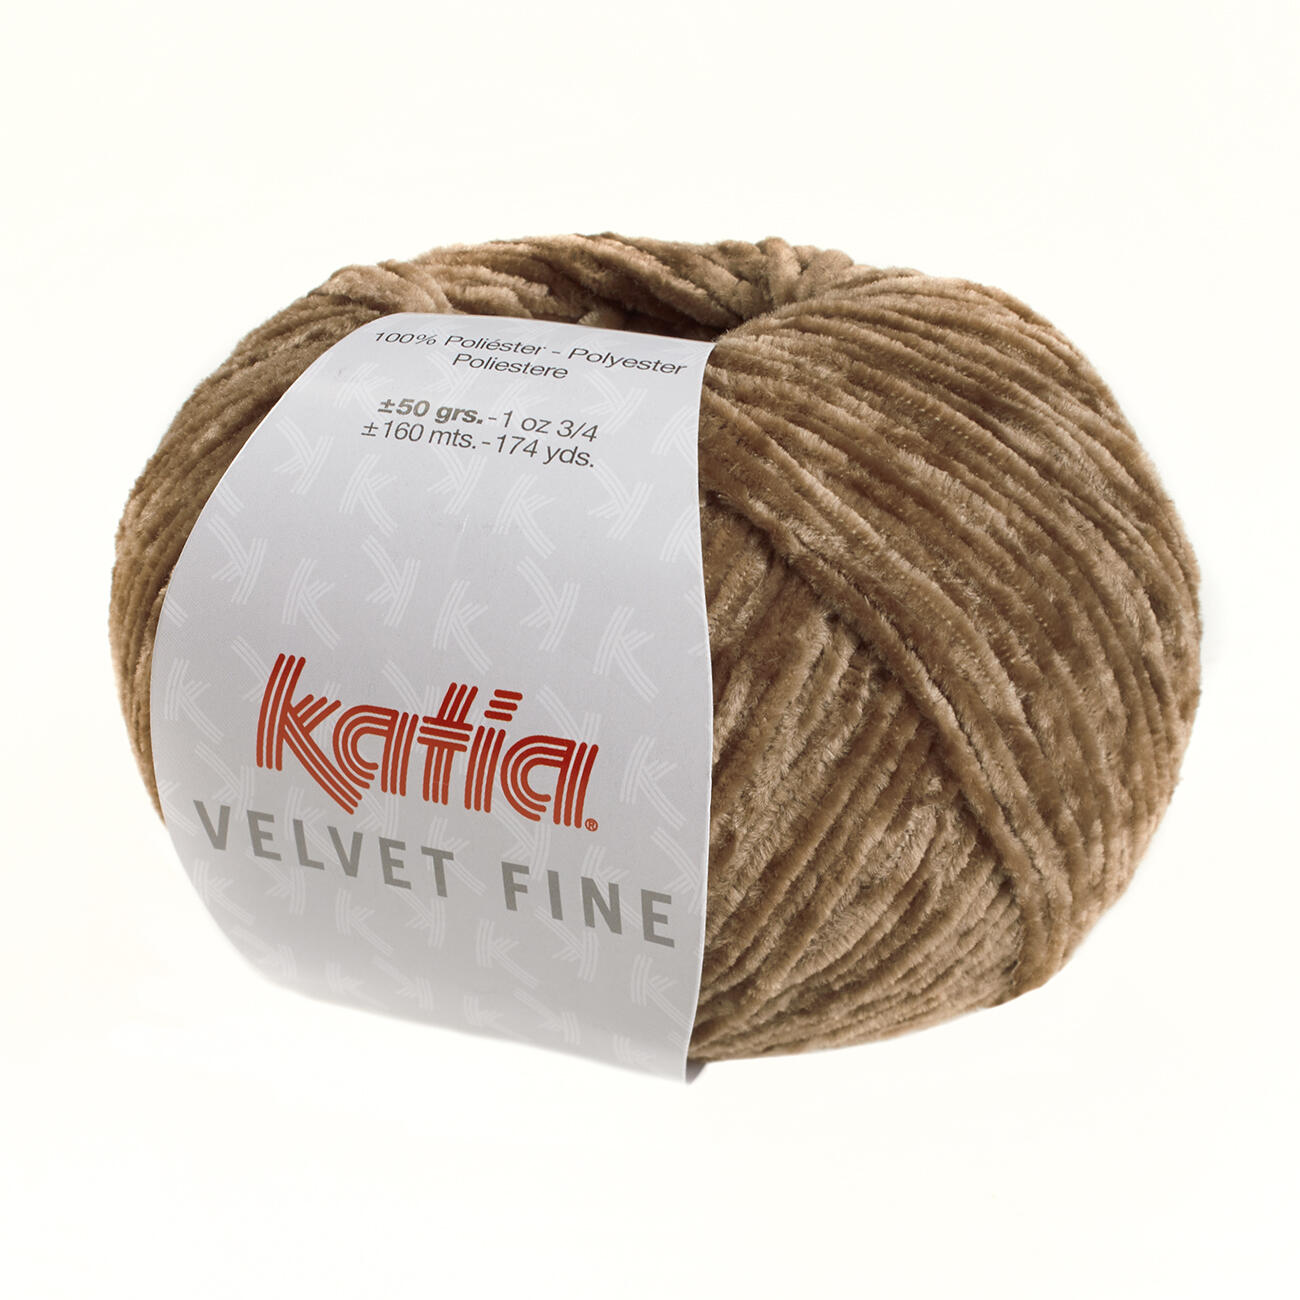 160 m Wolle 211 - 50 g / ca NEGRO VELVET FINE von Katia